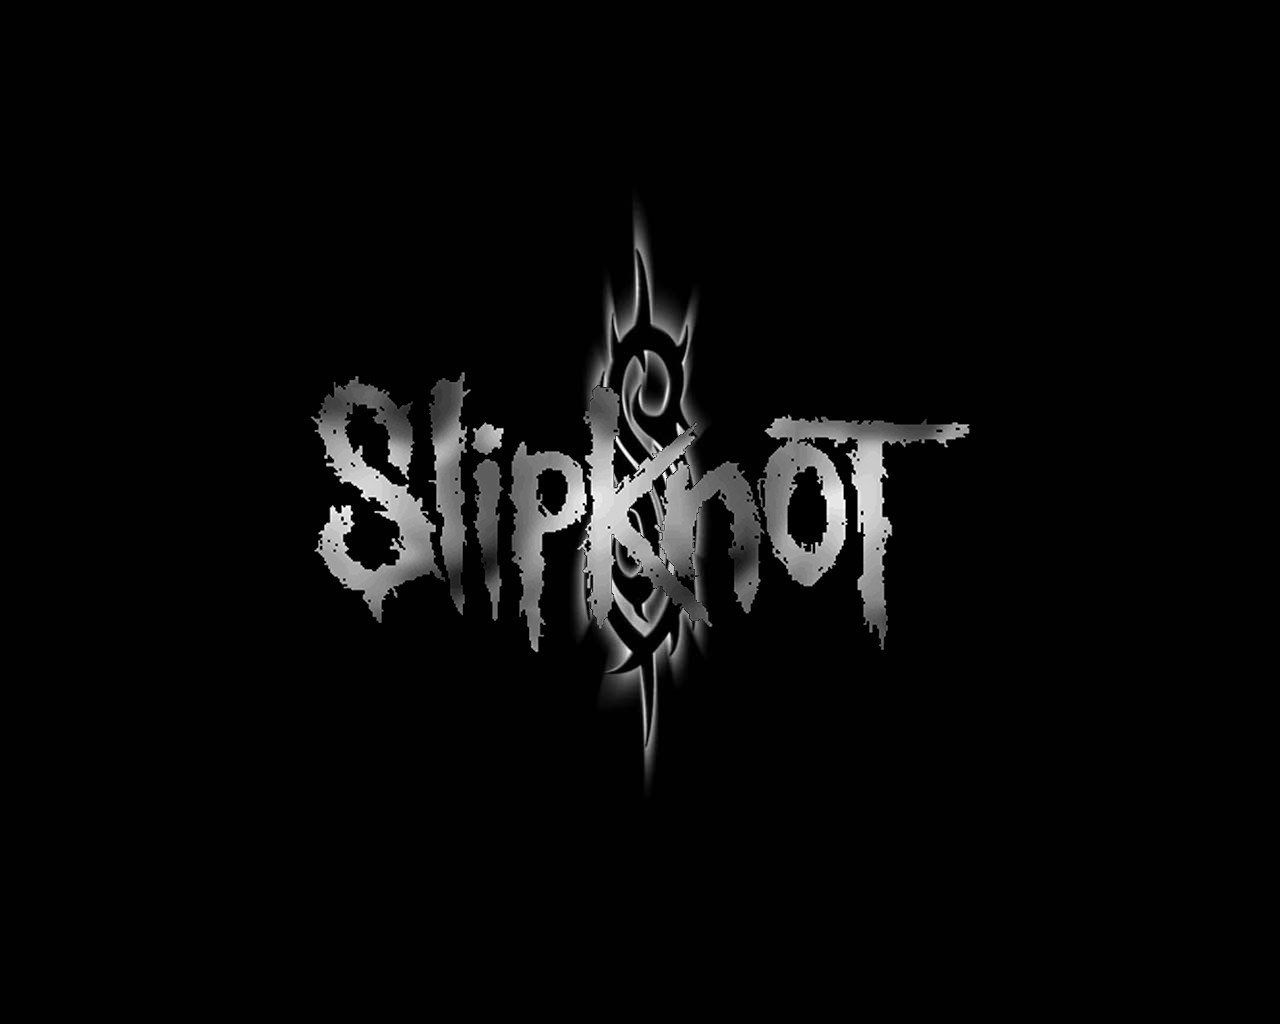 slipknot_logo.jpg